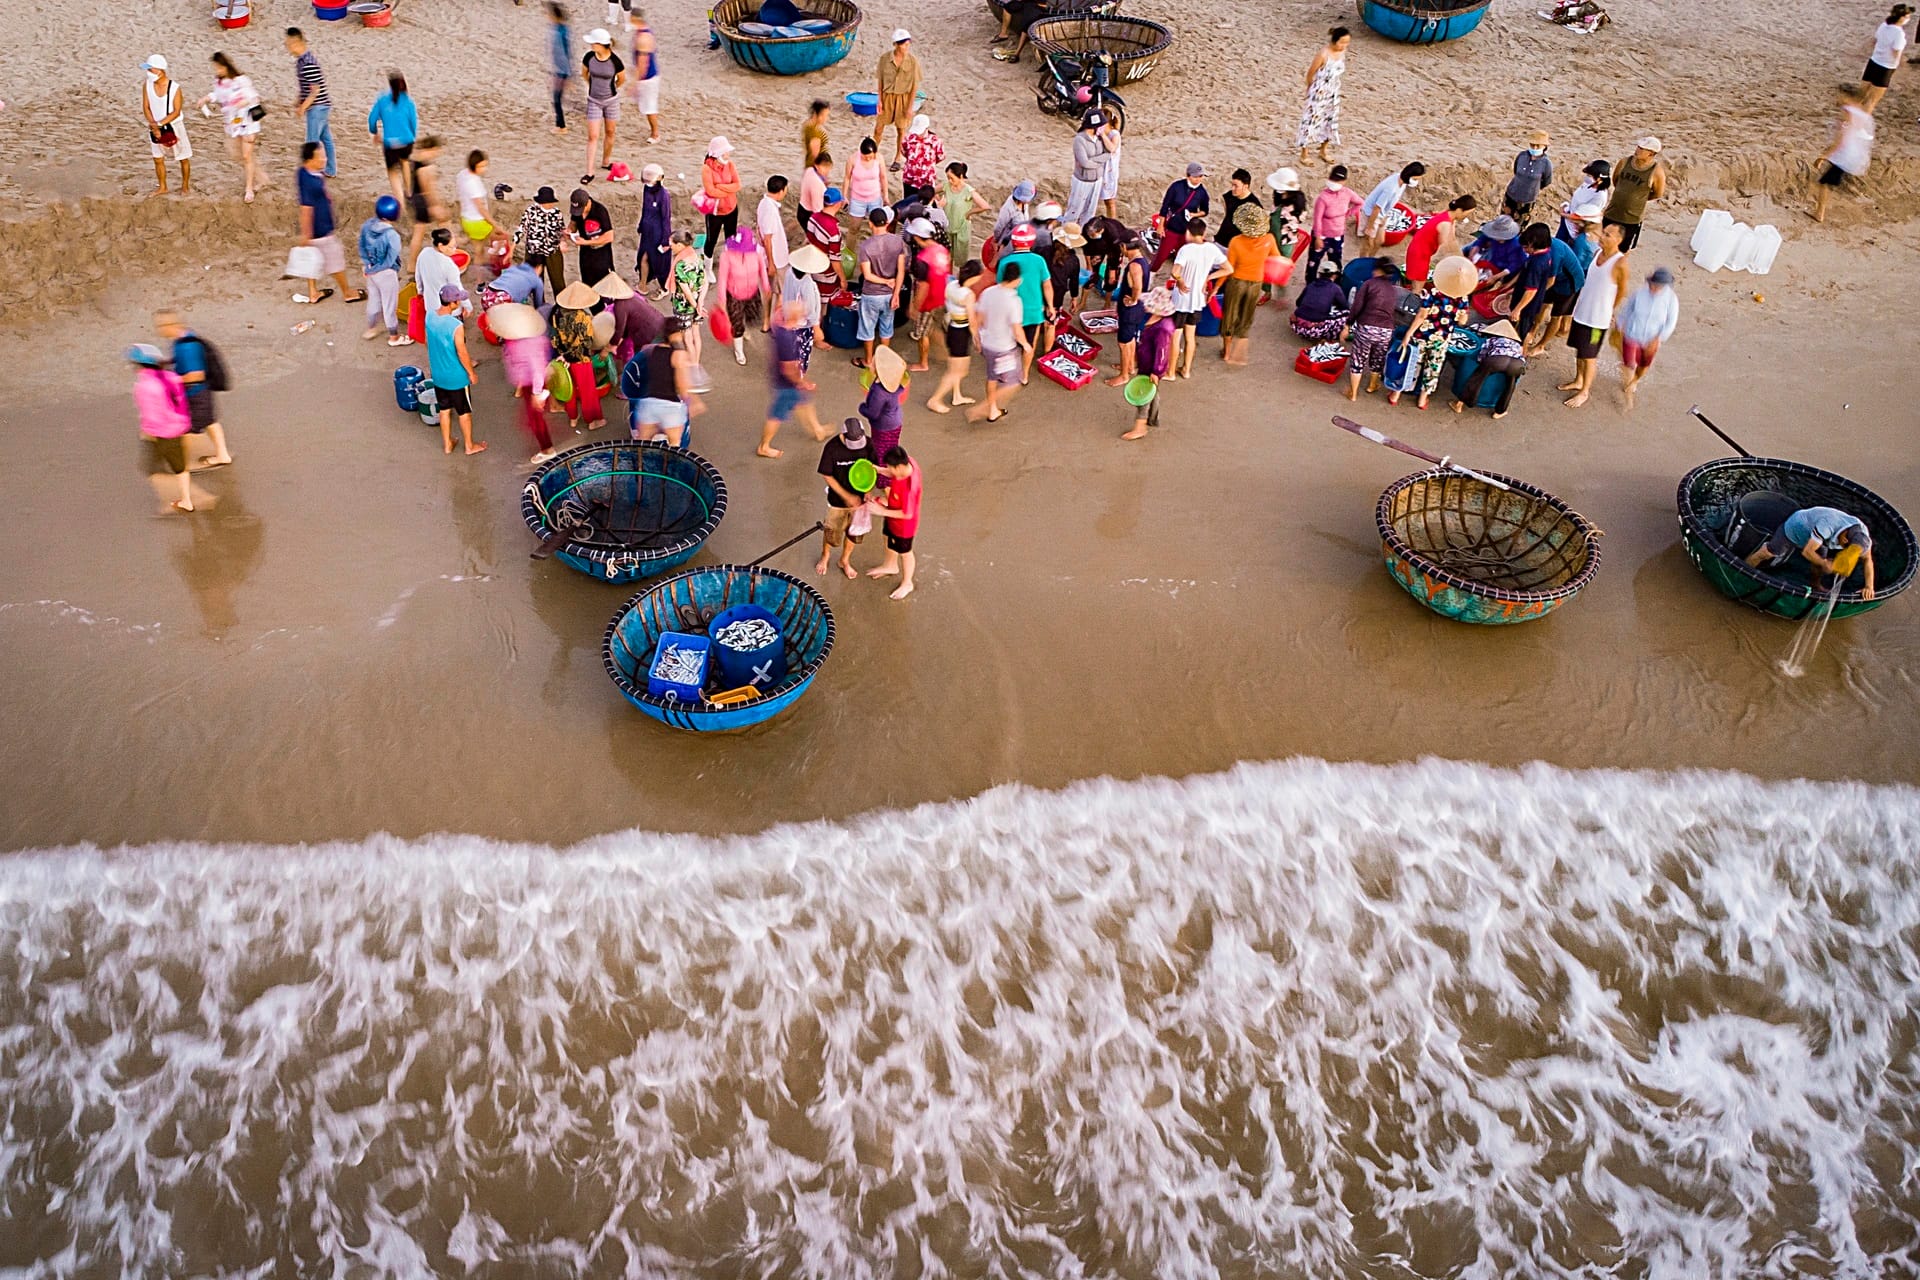 Bãi Biển Mân Thái Đà Nẵng - Bãi biển mang vẻ đẹp hoang sơ